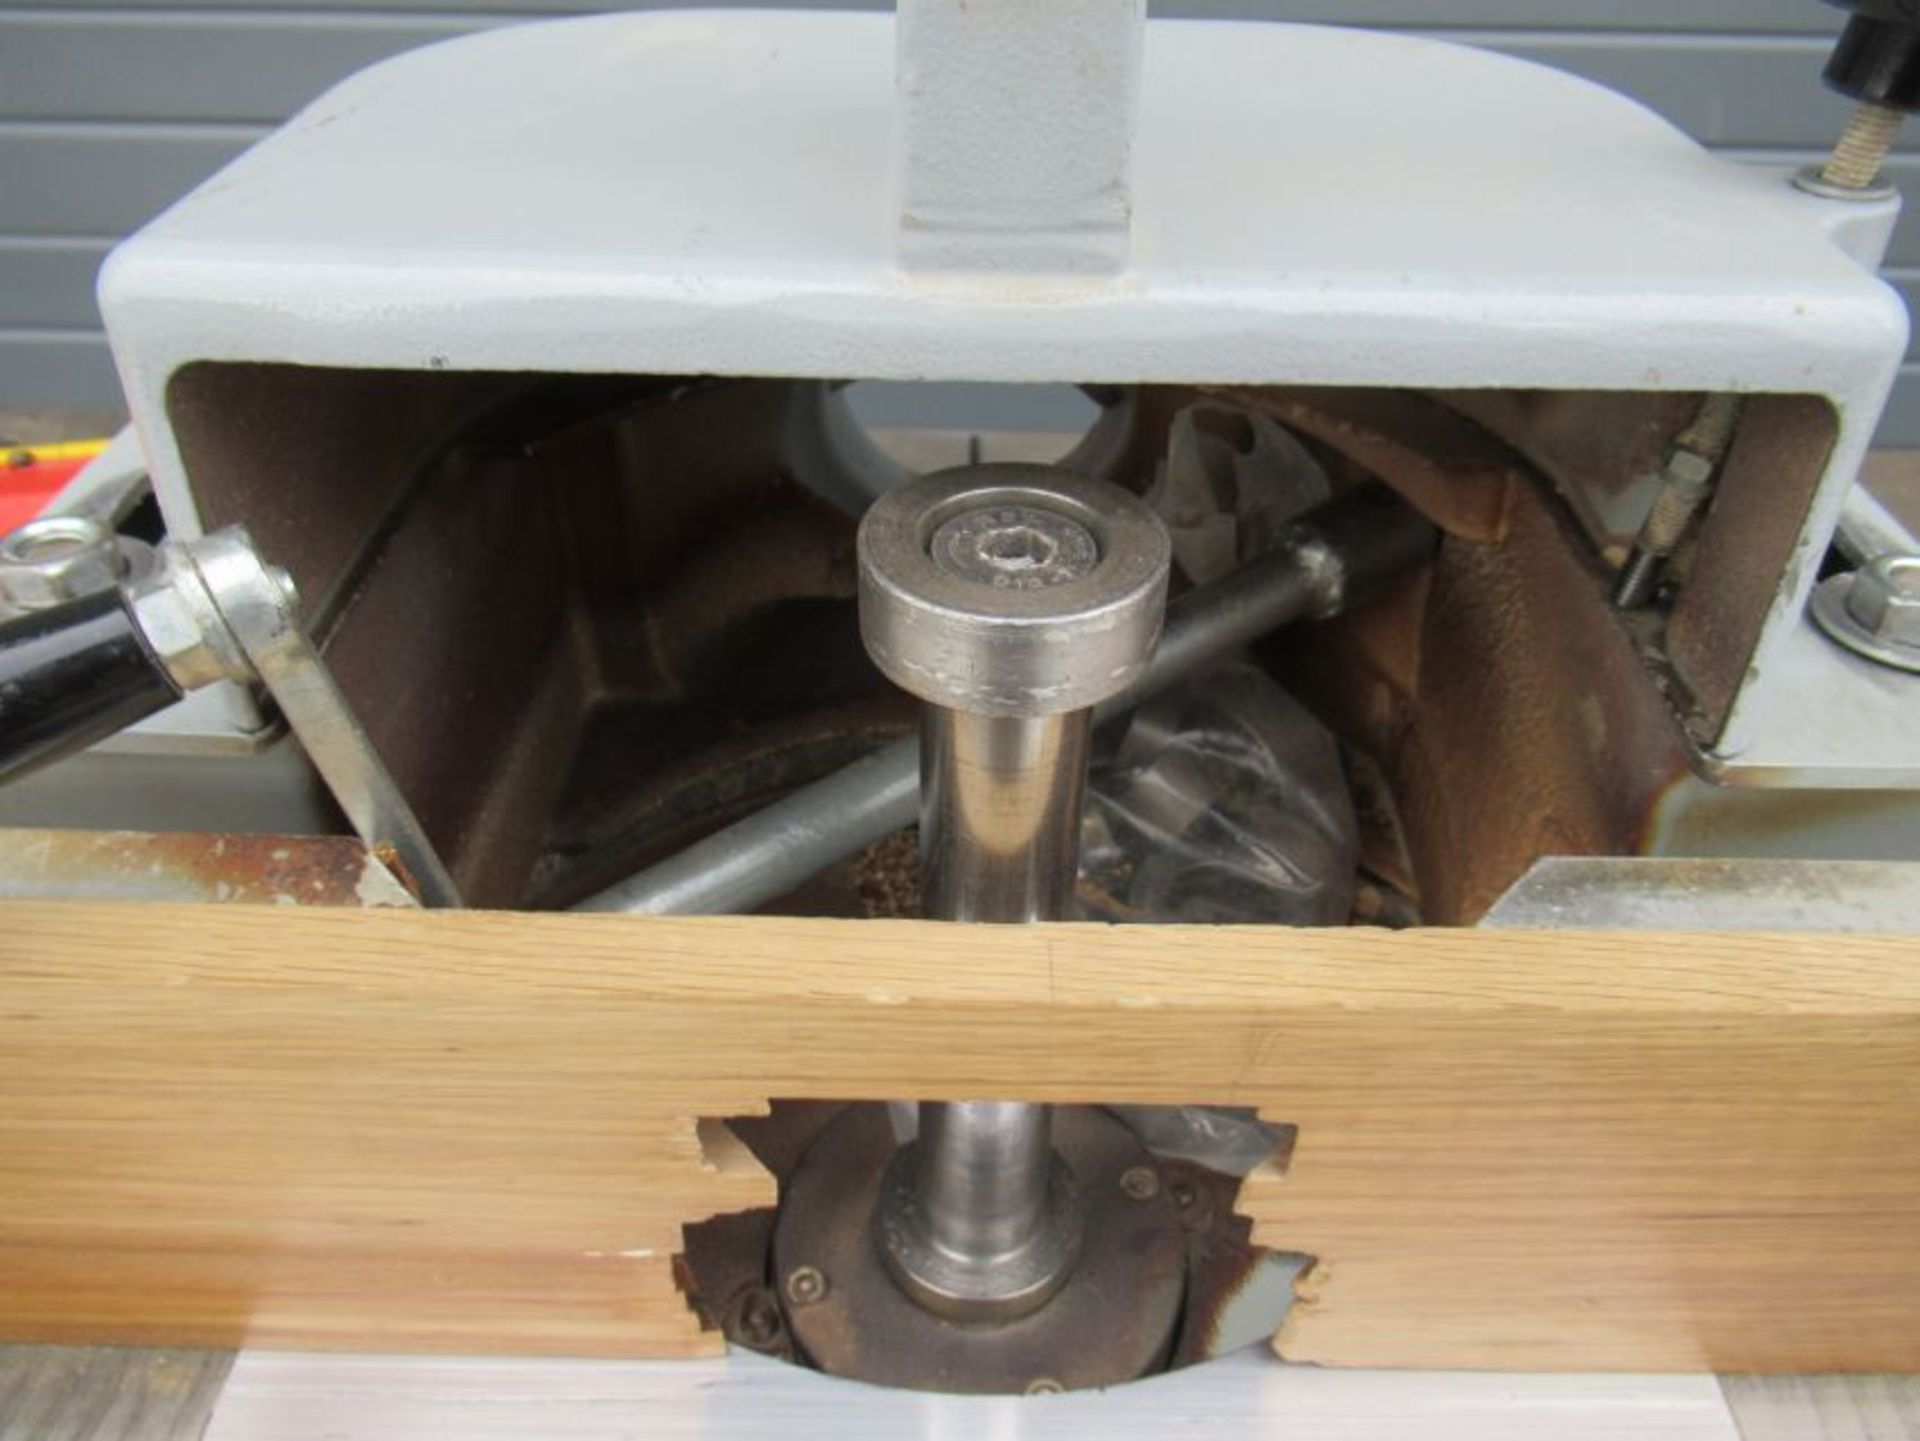 Sicar SF90 spindle moulder - Image 3 of 7